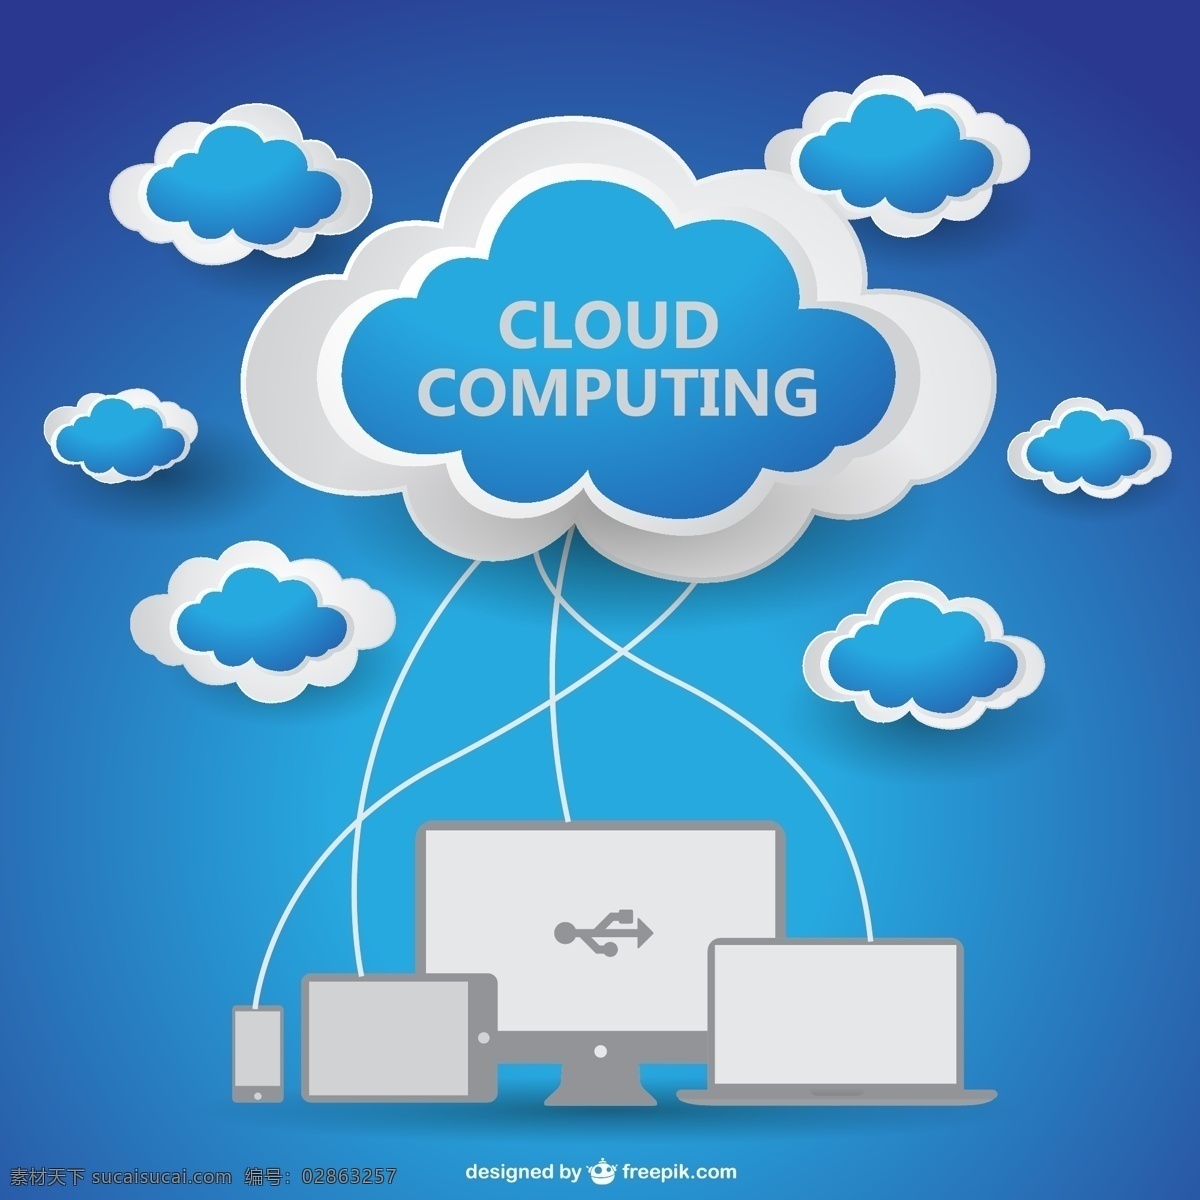 云 接到 电子设备 背景 抽象 计算机 电话 技术 天空 模板 蓝色背景 蓝色 笔记本电脑 网络 壁纸 图形 布局